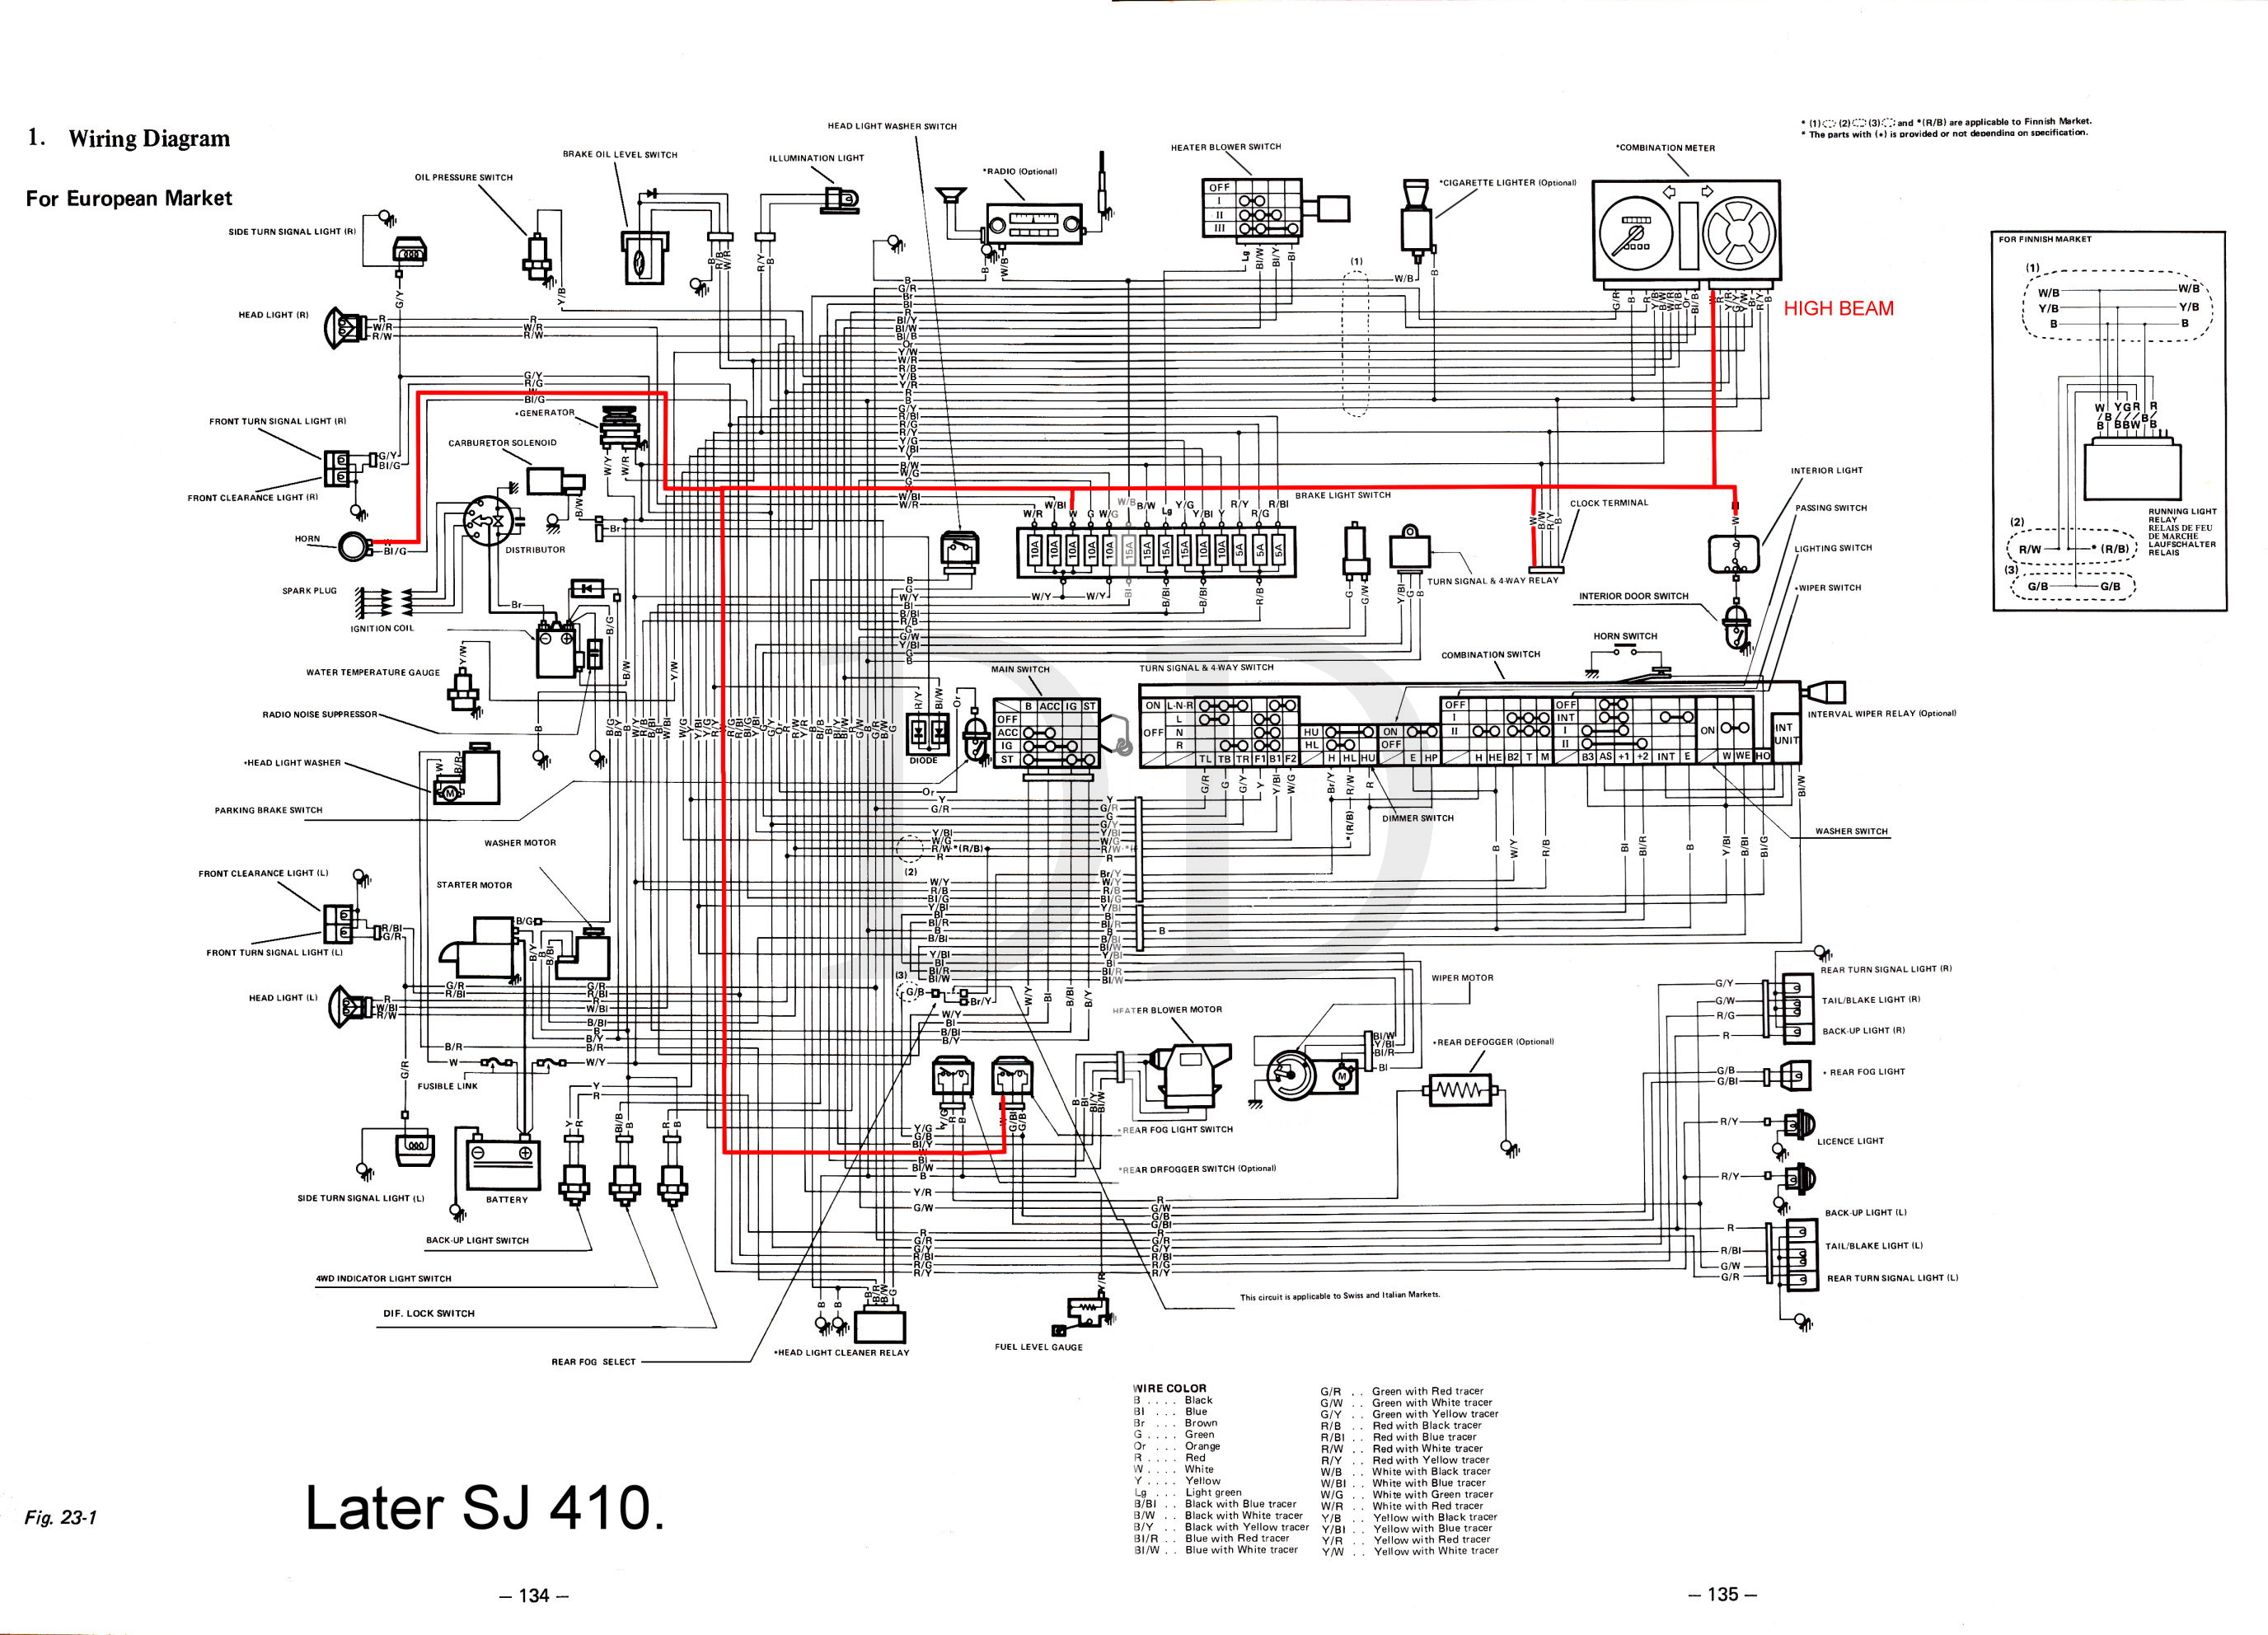 410 wiring diagram.jpg